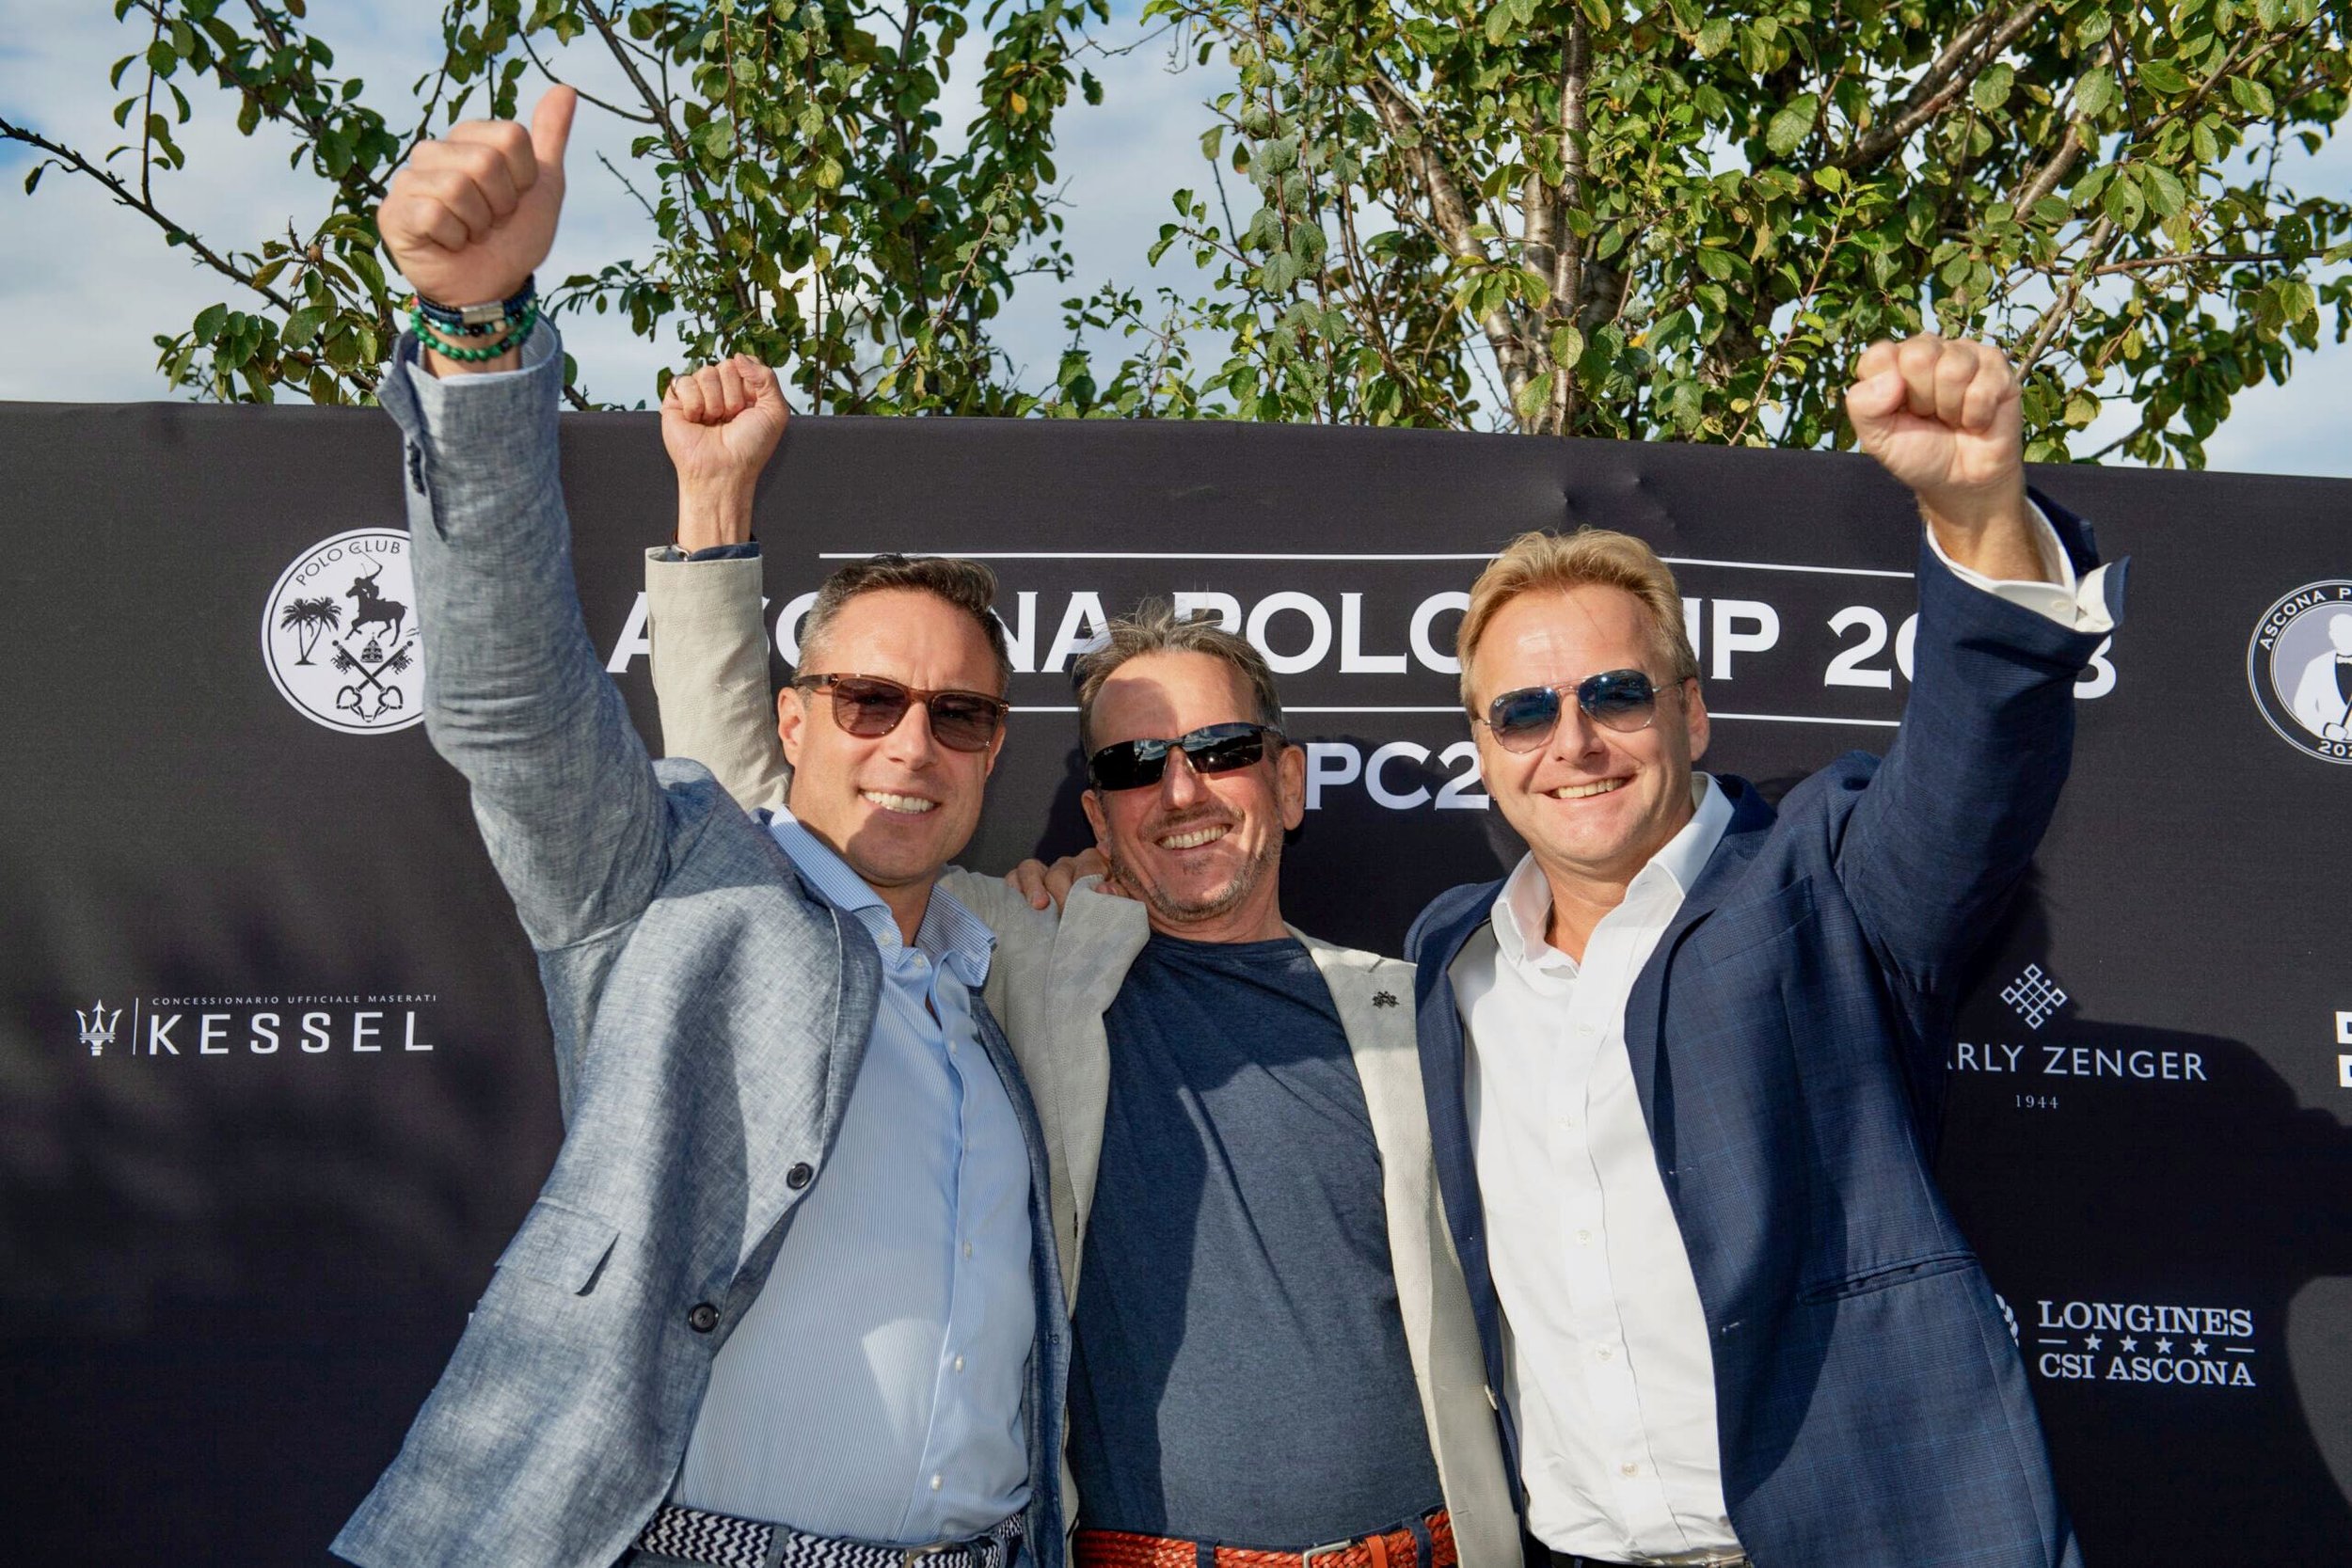 Ascona Polo CUp 2023 - 1.jpeg (Copy) (Copy)